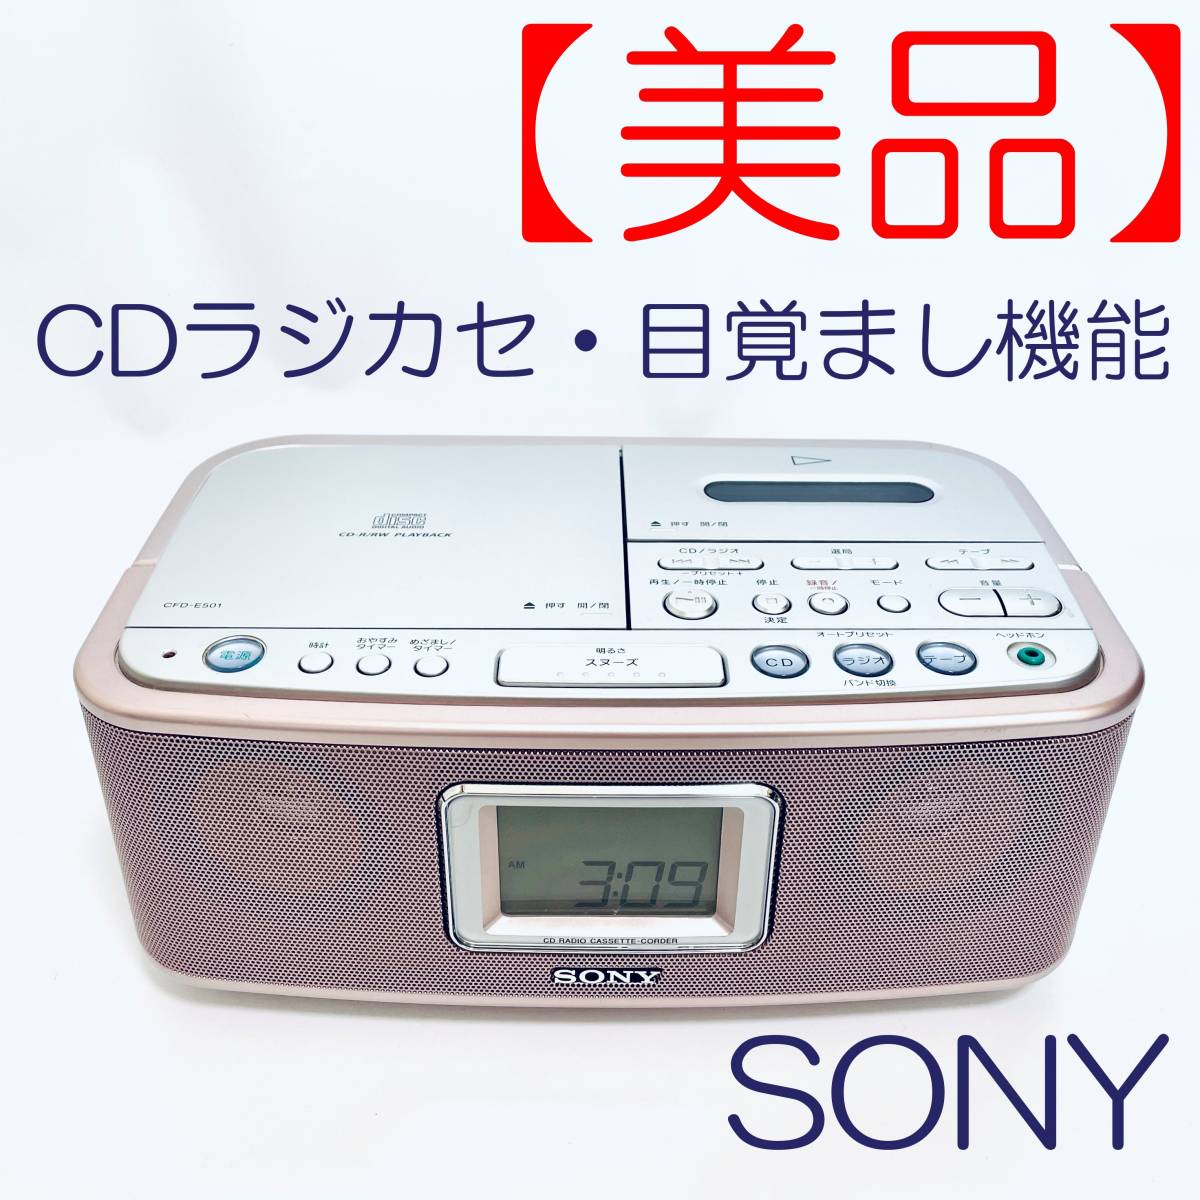 SONY CDプレーヤー CFD-E500TV ピンク - ラジオ・コンポ